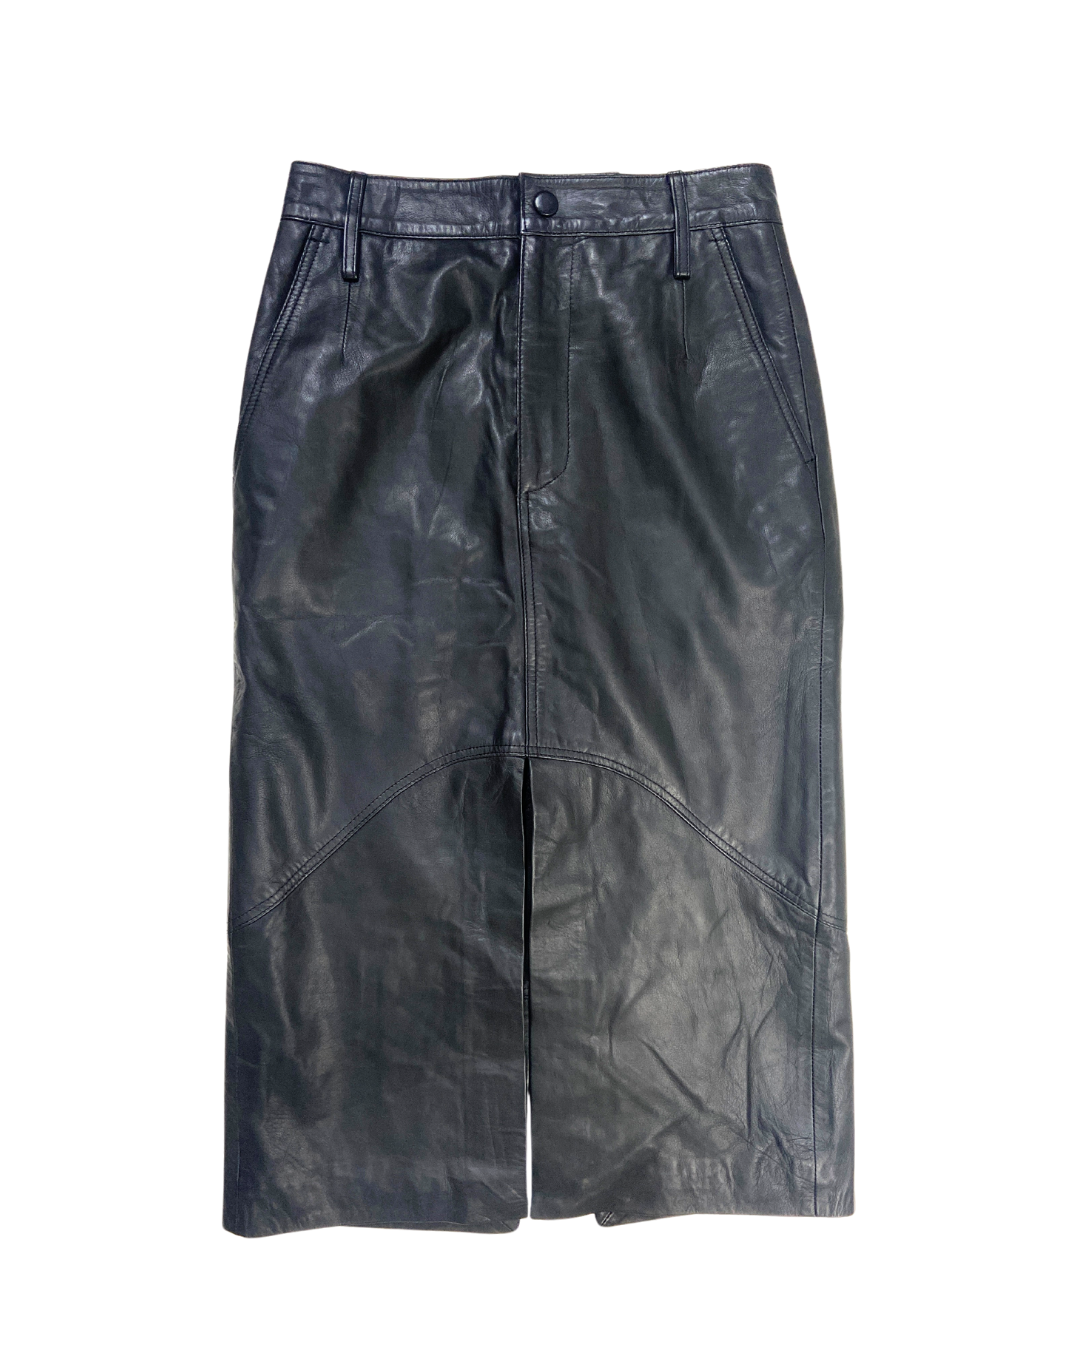 Black Leather Midi Skirt